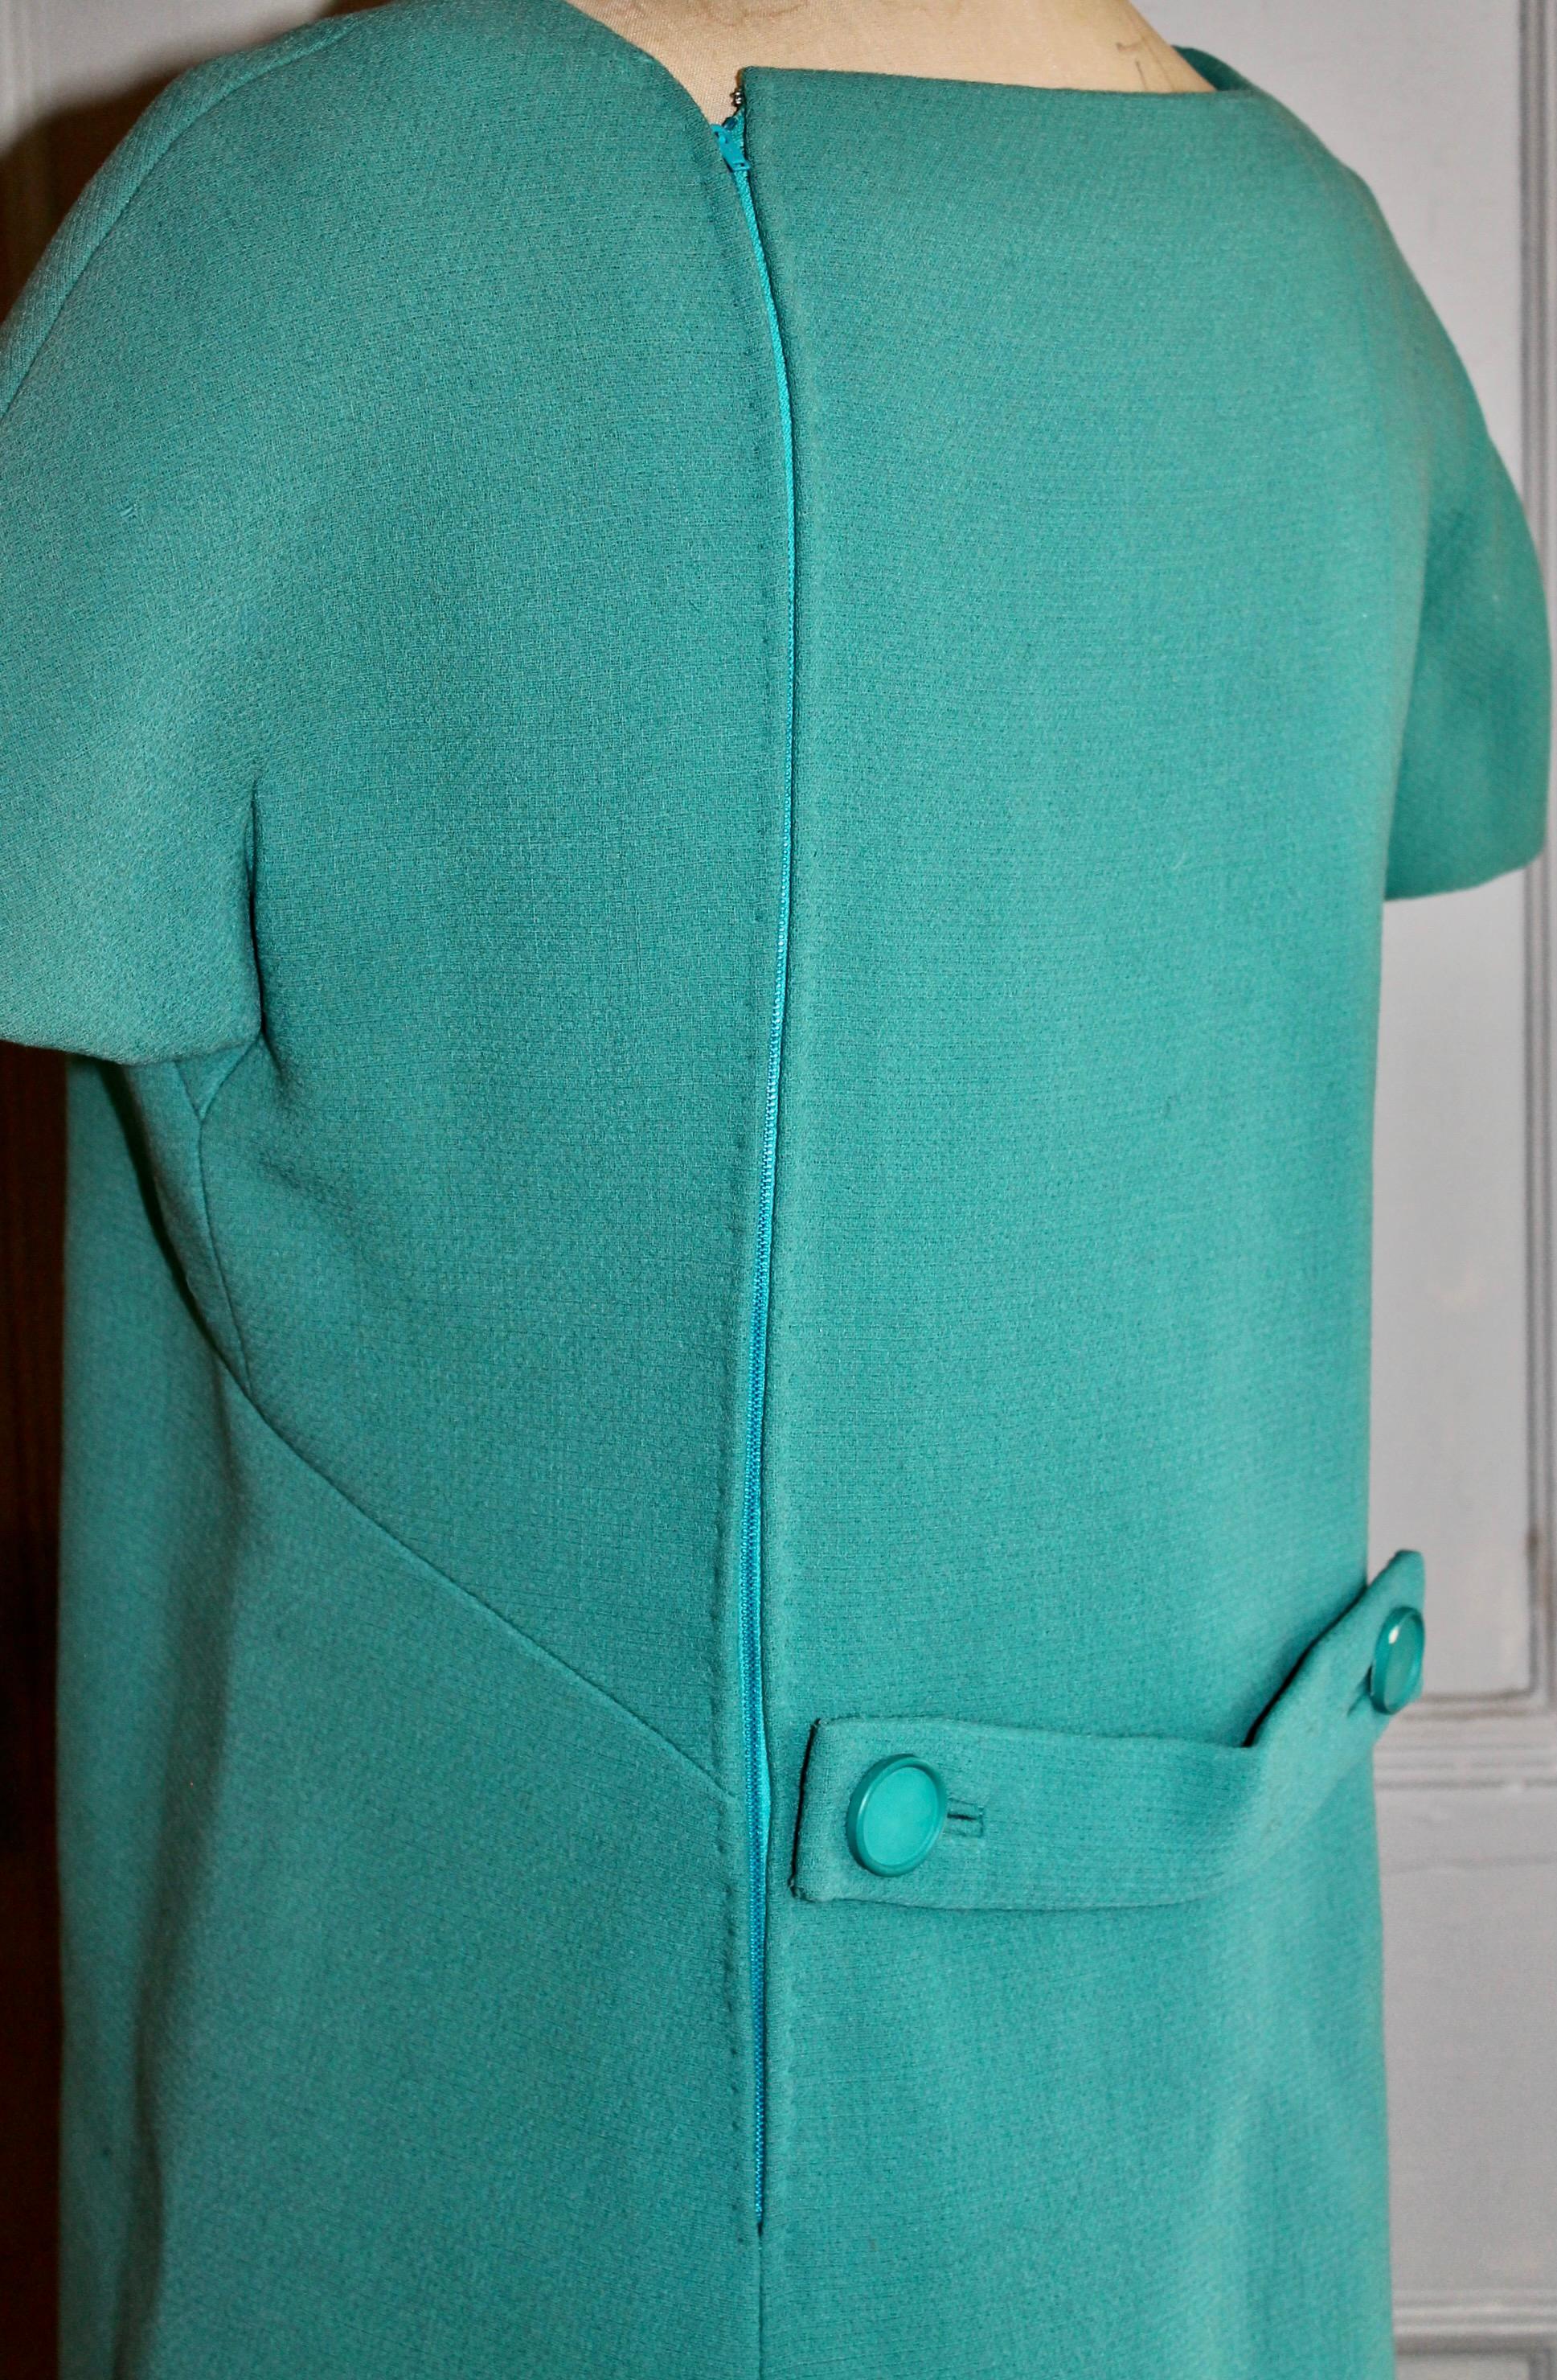 Jean Patou Paris Collection Boutique Green/Blue Day Dress For Sale 5